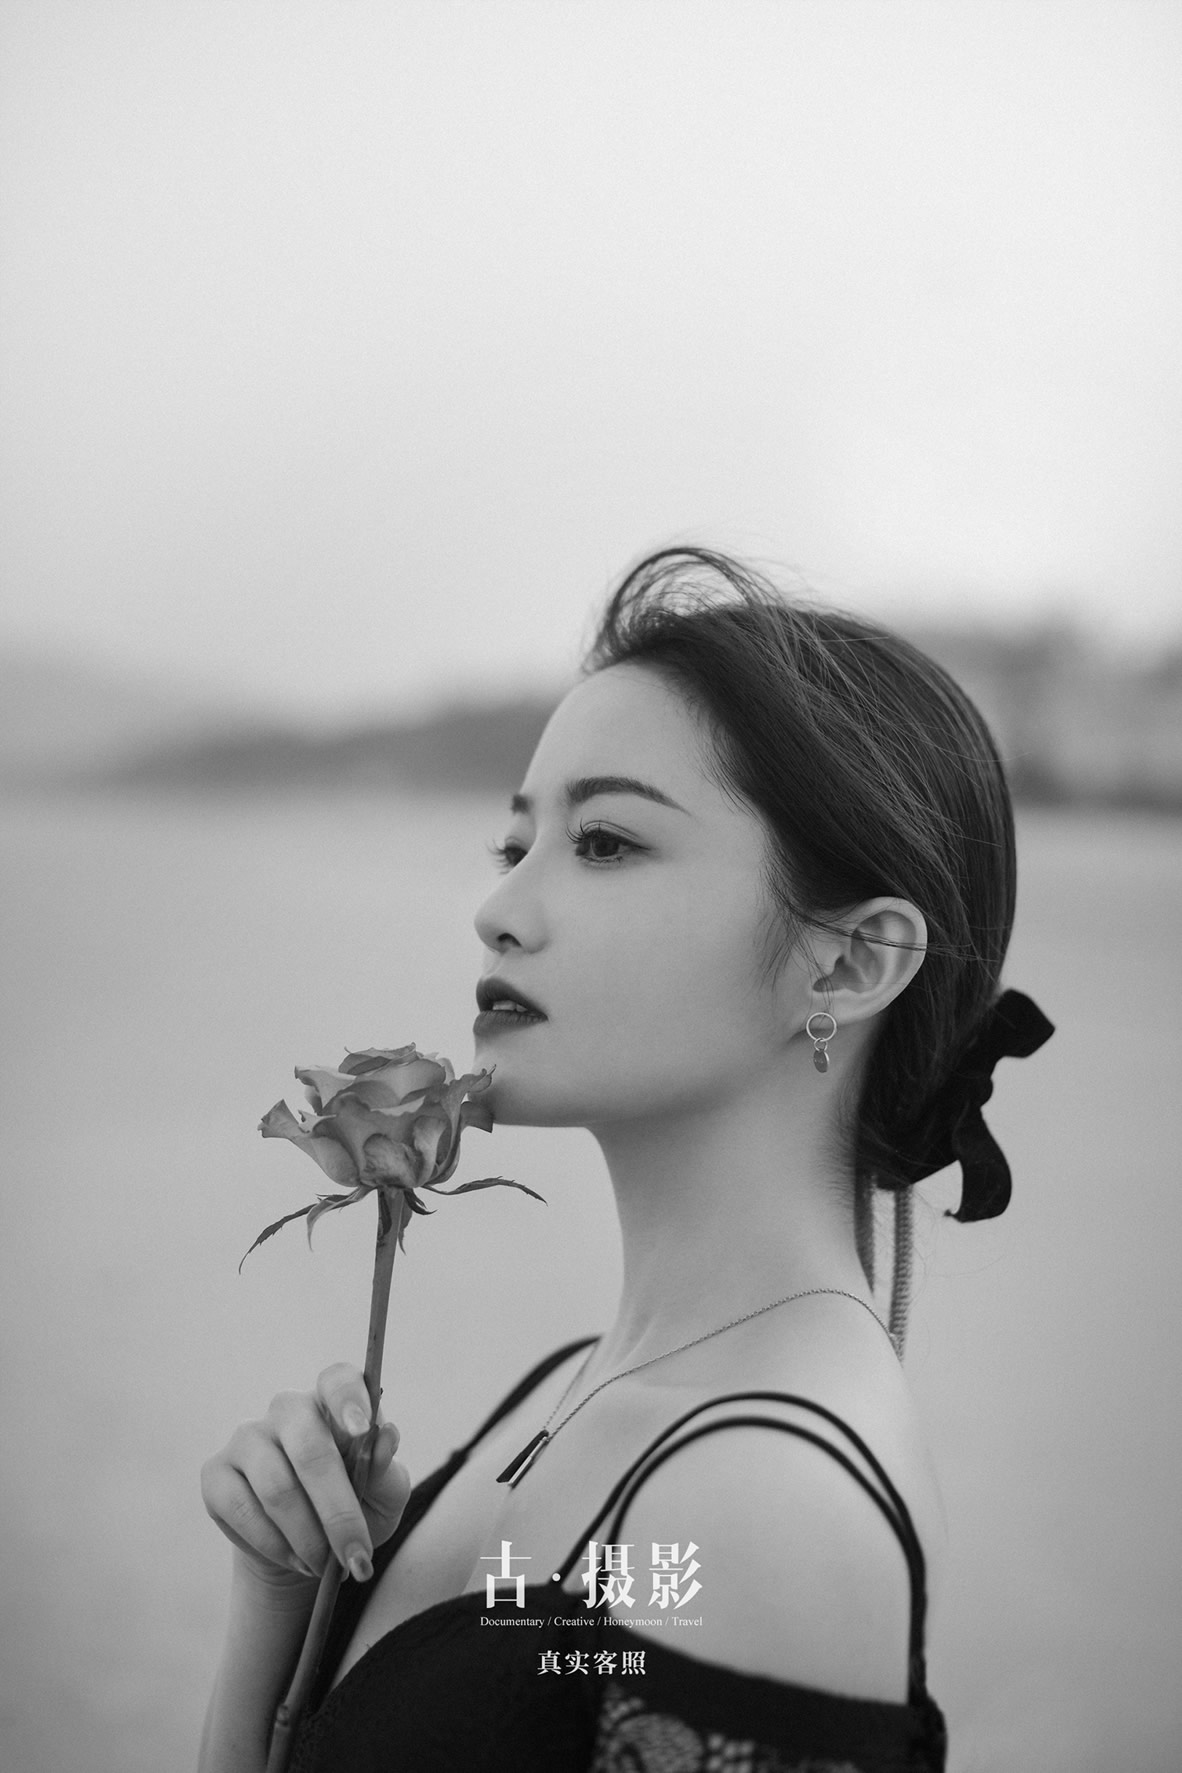 梁先生 林小姐 - 每日客照 - 广州婚纱摄影-广州古摄影官网